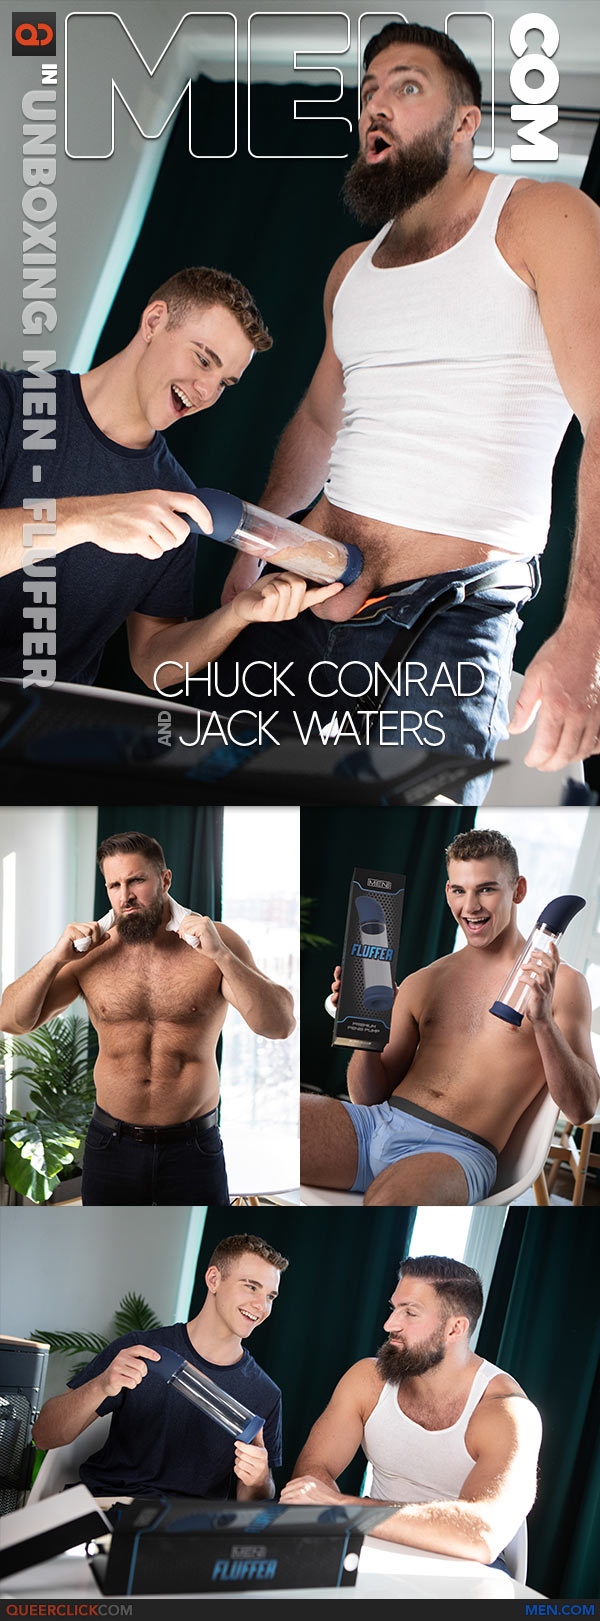 Men.com: Chuck Conrad Fucks Jake Waters - Unboxing MEN - Fluffer